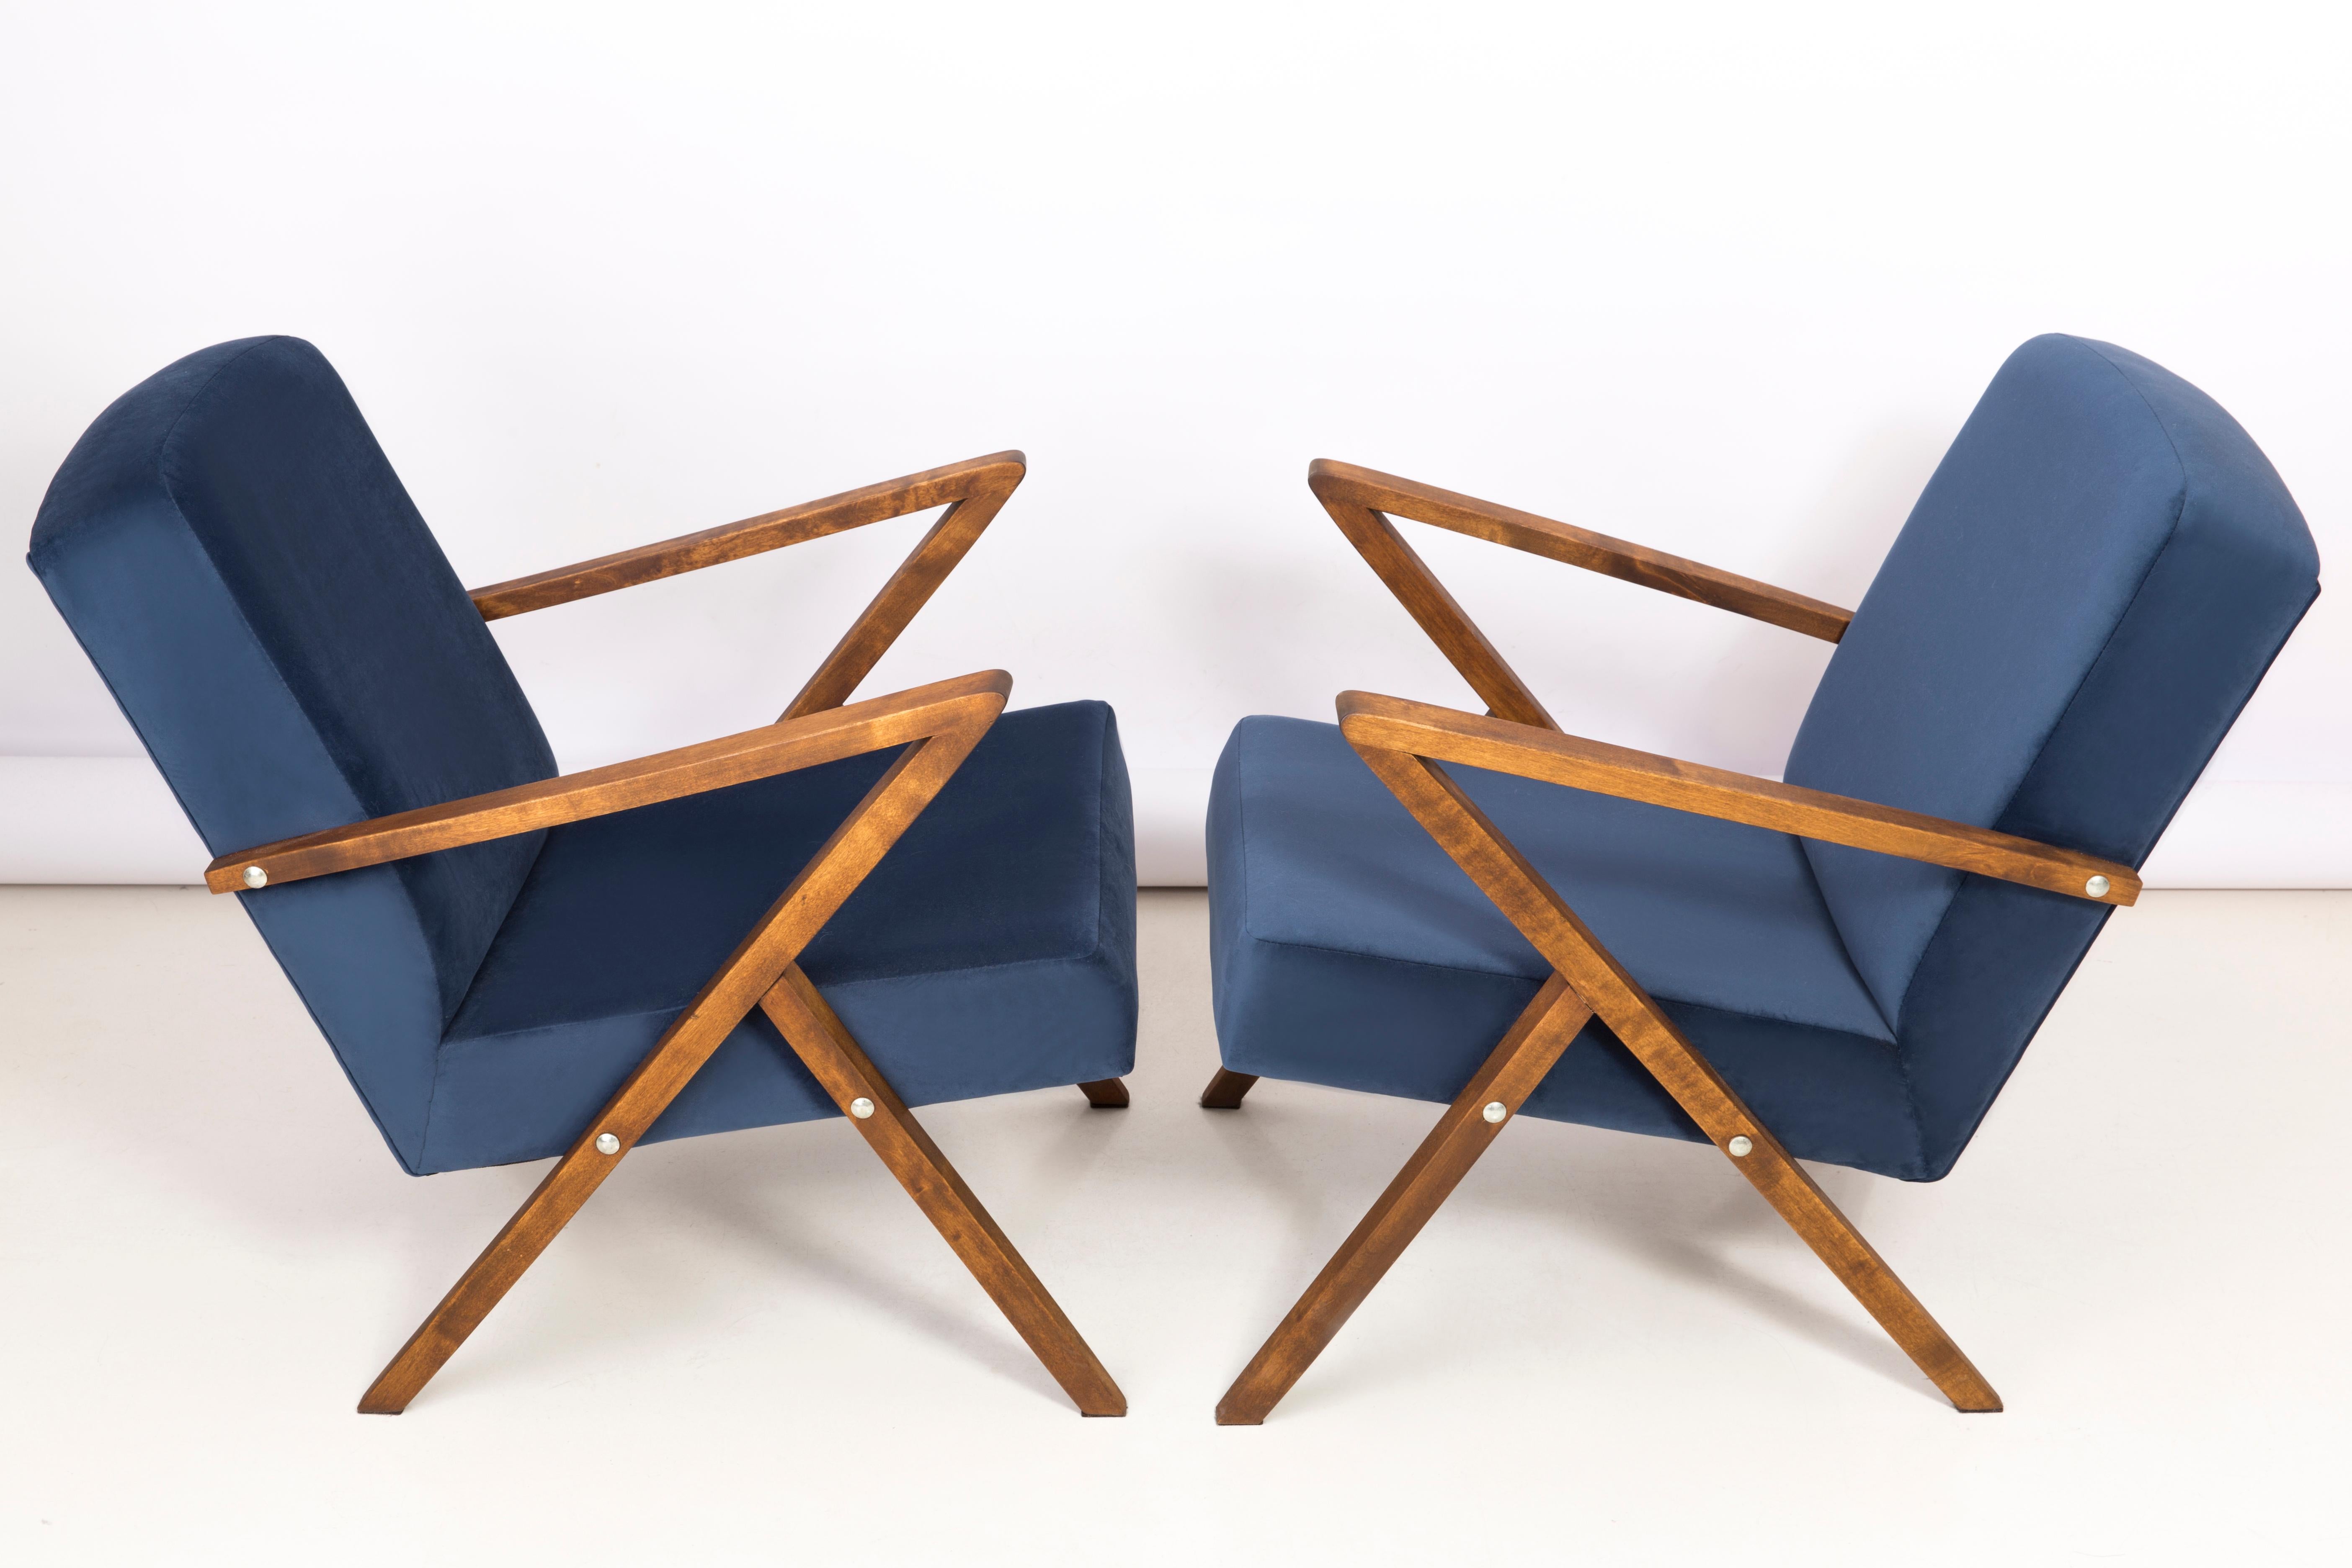 Ein Paar Sessel, die in den 1970er Jahren in der Genossenschaft für die Erneuerung von Bydgoszcz hergestellt wurden. Die Sessel sind nach einer umfassenden Renovierung von Tischlerarbeiten und Polsterung. Das Holz wurde gereinigt, die Hohlräume